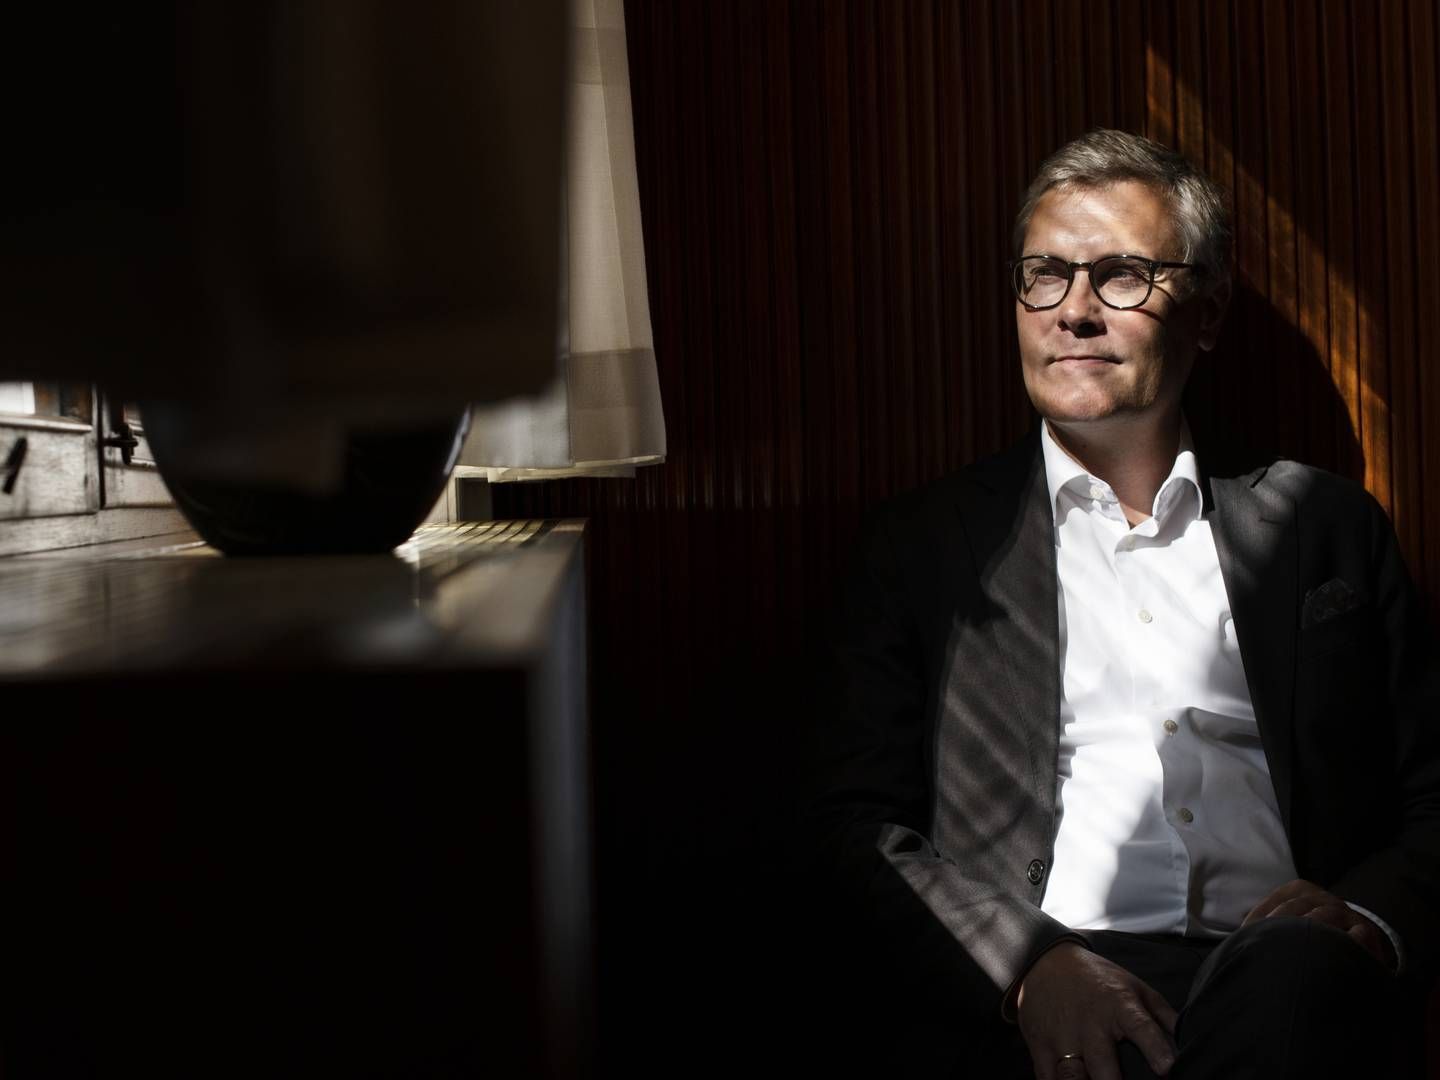 Der er travlt med onboarding af nye kunder i Danske Bank, fortæller erhvervsdirektør Niels Bang-Hansen. | Foto: Gregers Tycho/ERH